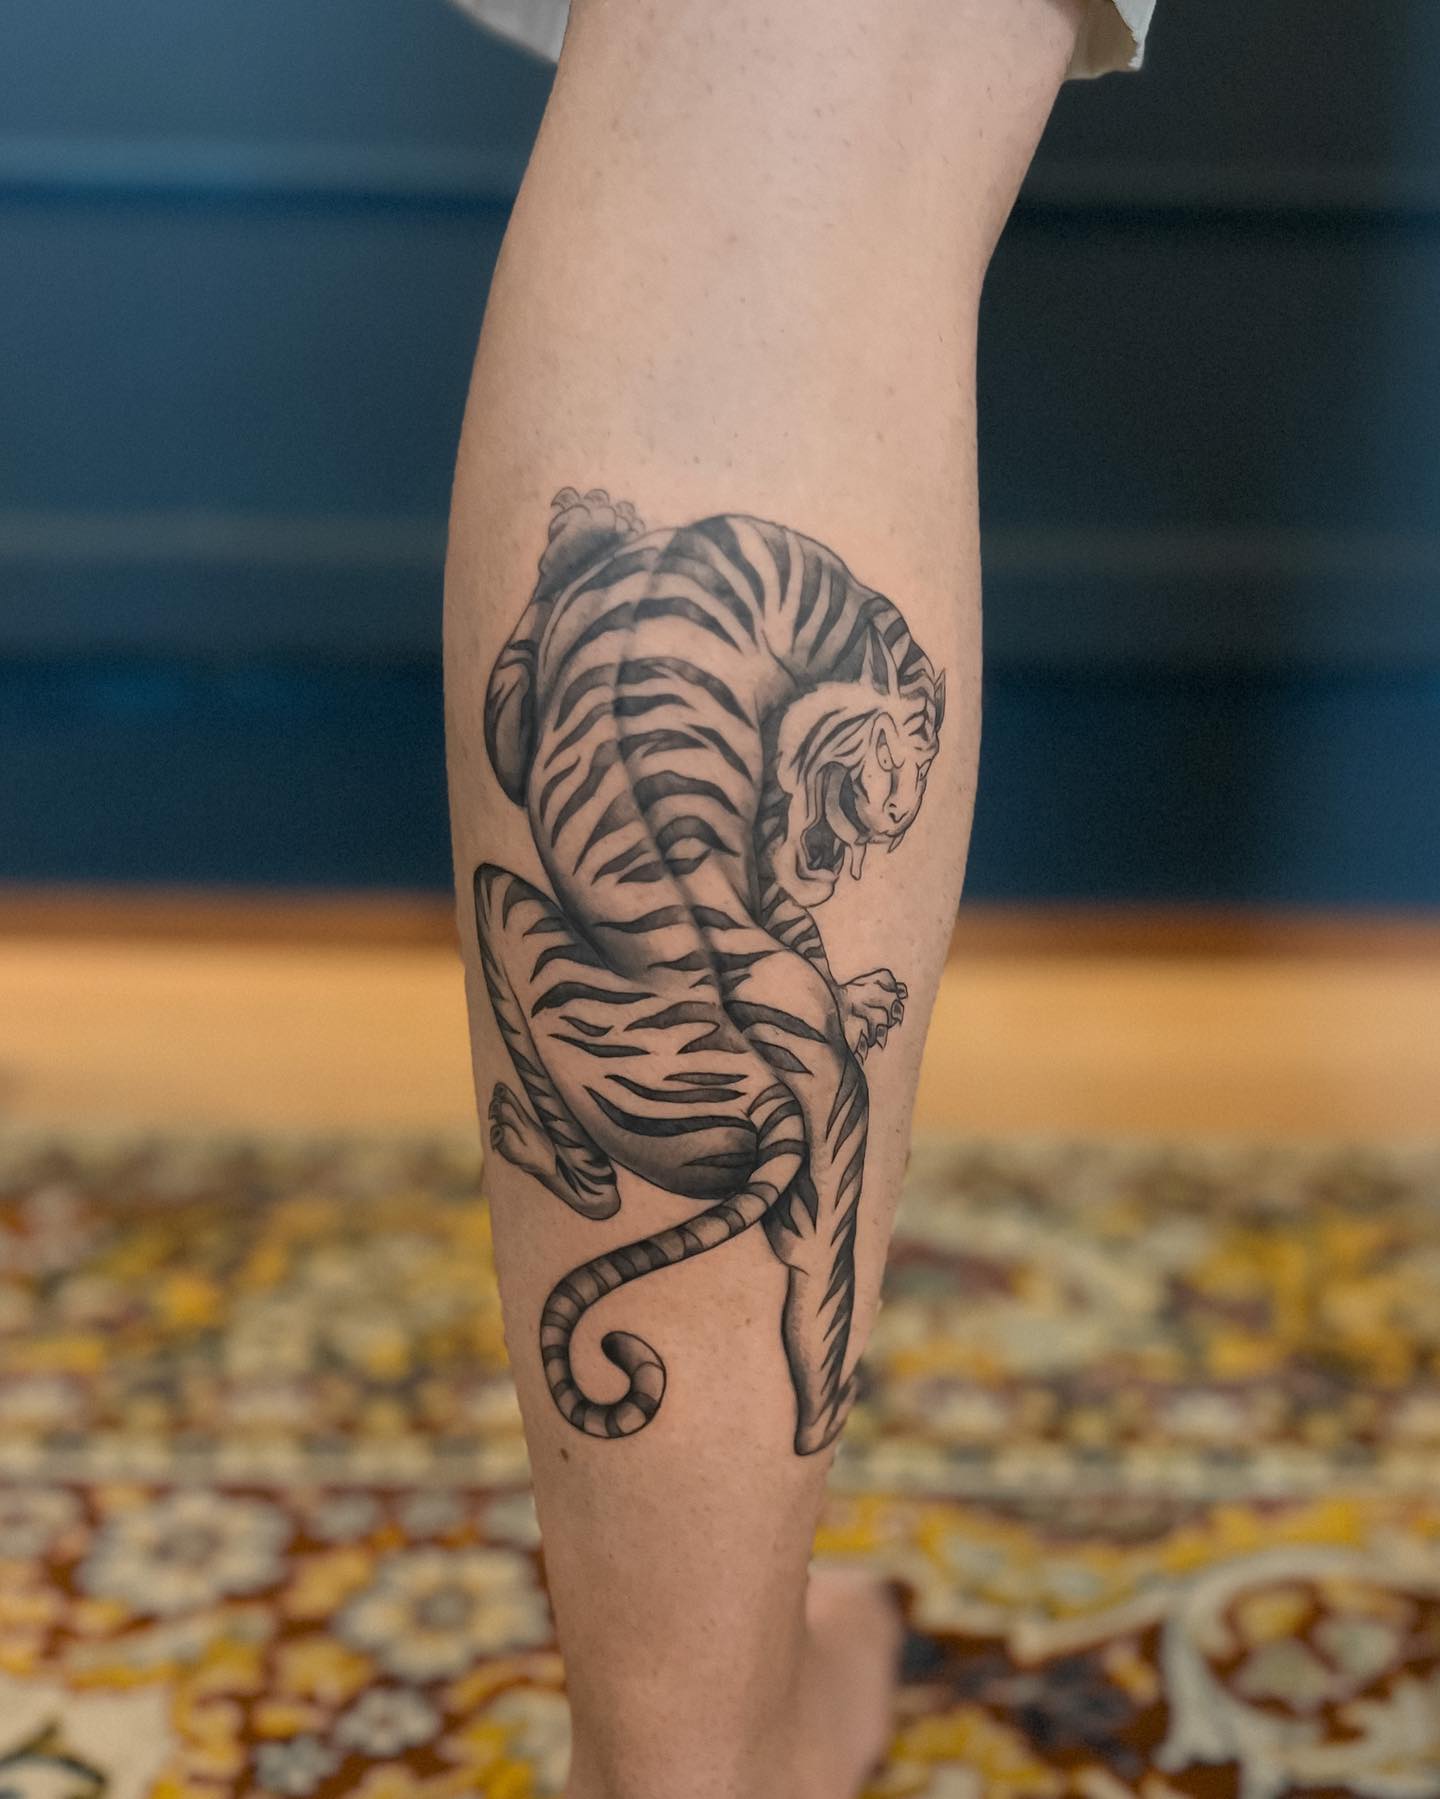 15+ Cool Hand Tattoos - Tiger Tattoo Designs | PetPress | Tiger tattoo  design, Tiger tattoo, Tiger hand tattoo